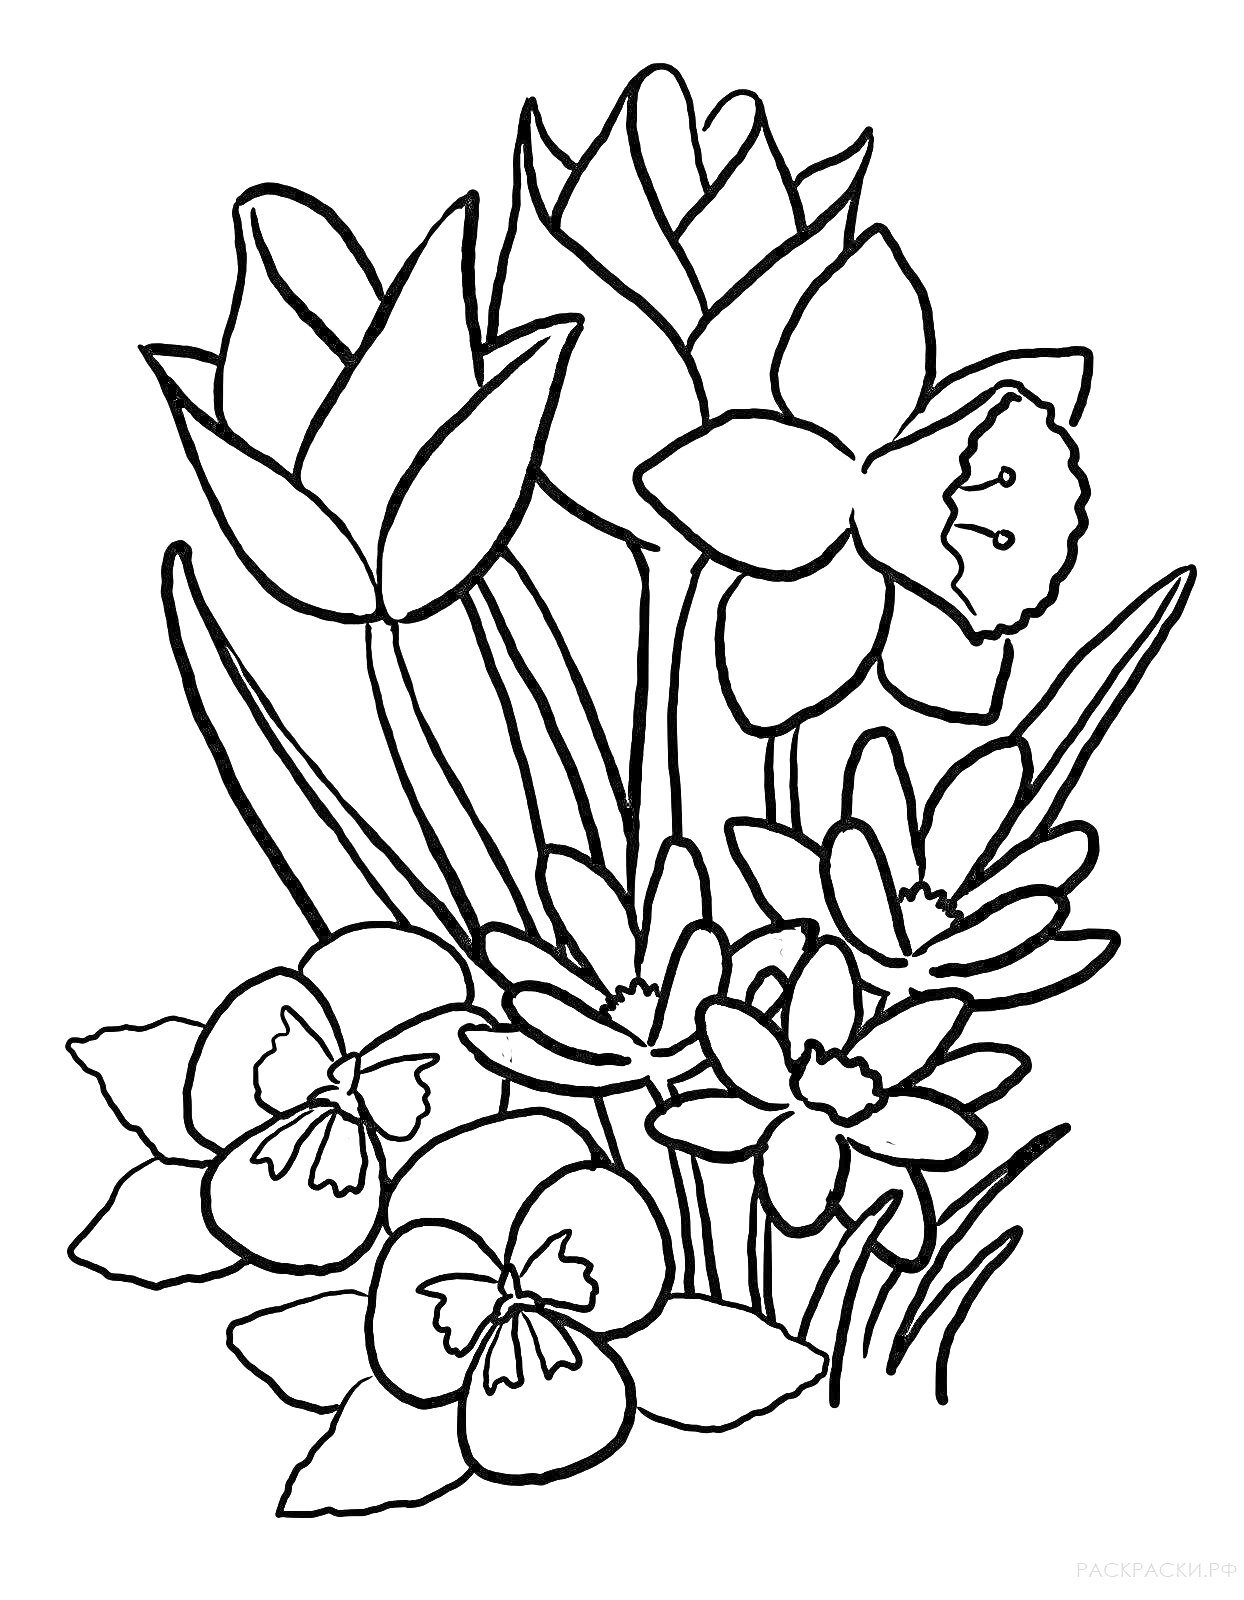 Весенние цветы - тюльпаны, нарцисс, нарциссы, анютины глазки